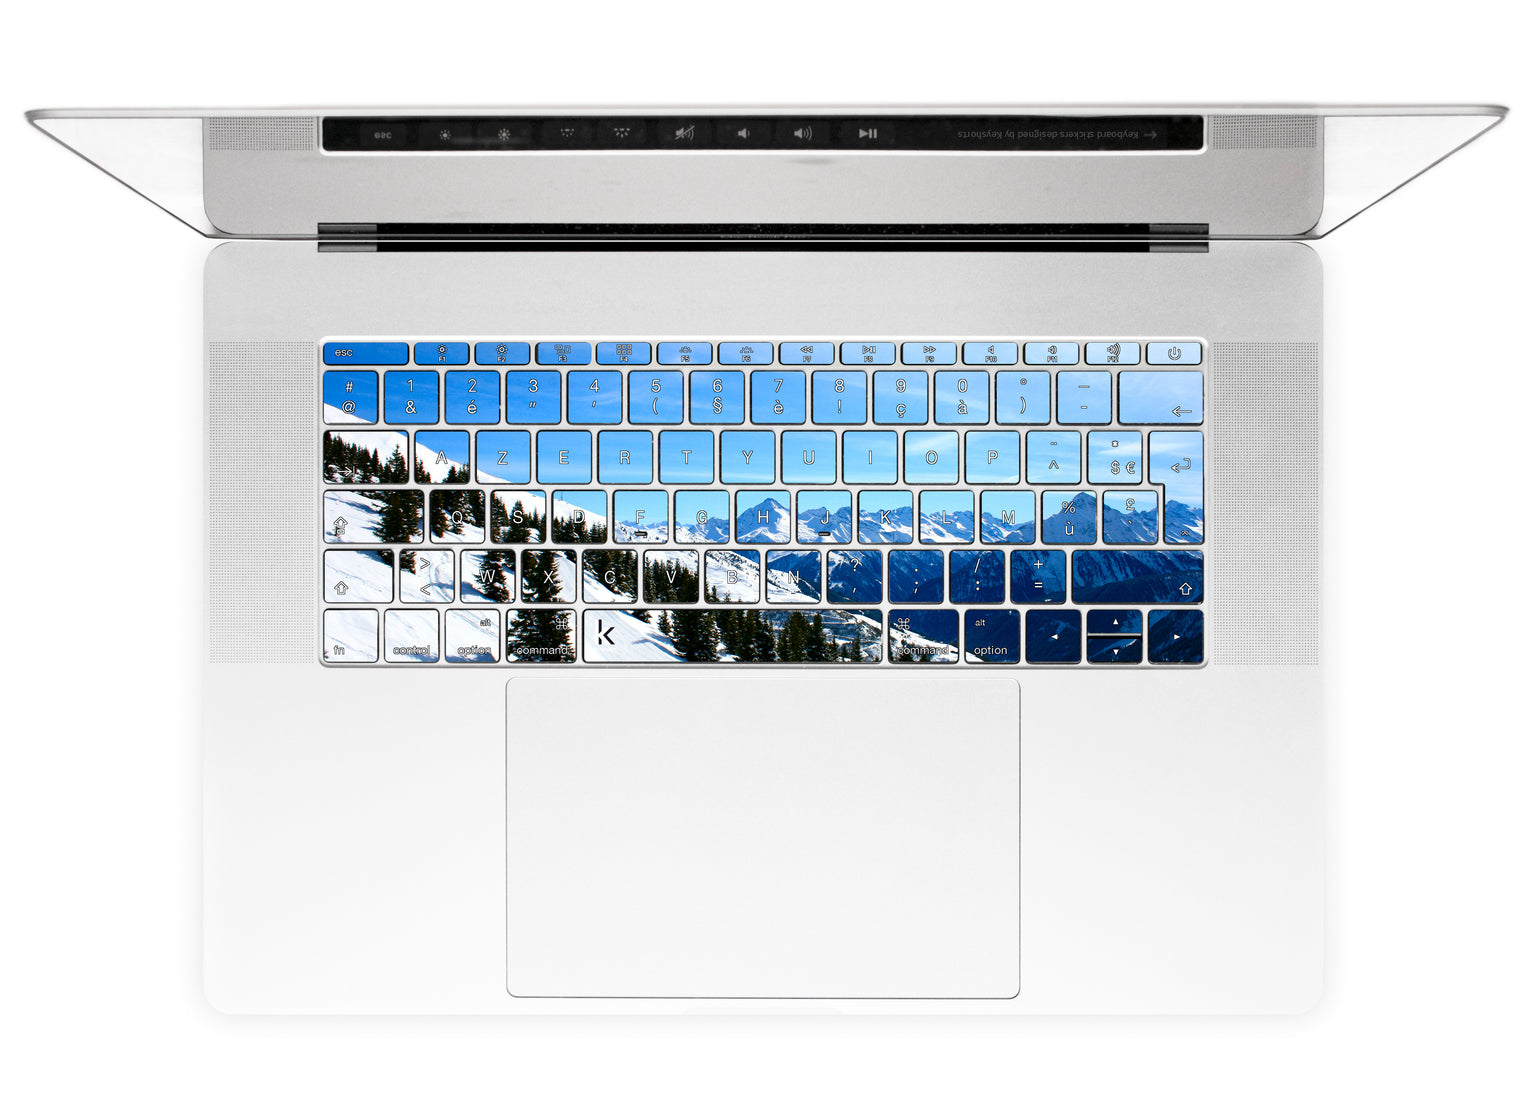 Snowboard Soul MacBook Keyboard Stickers alternate FR